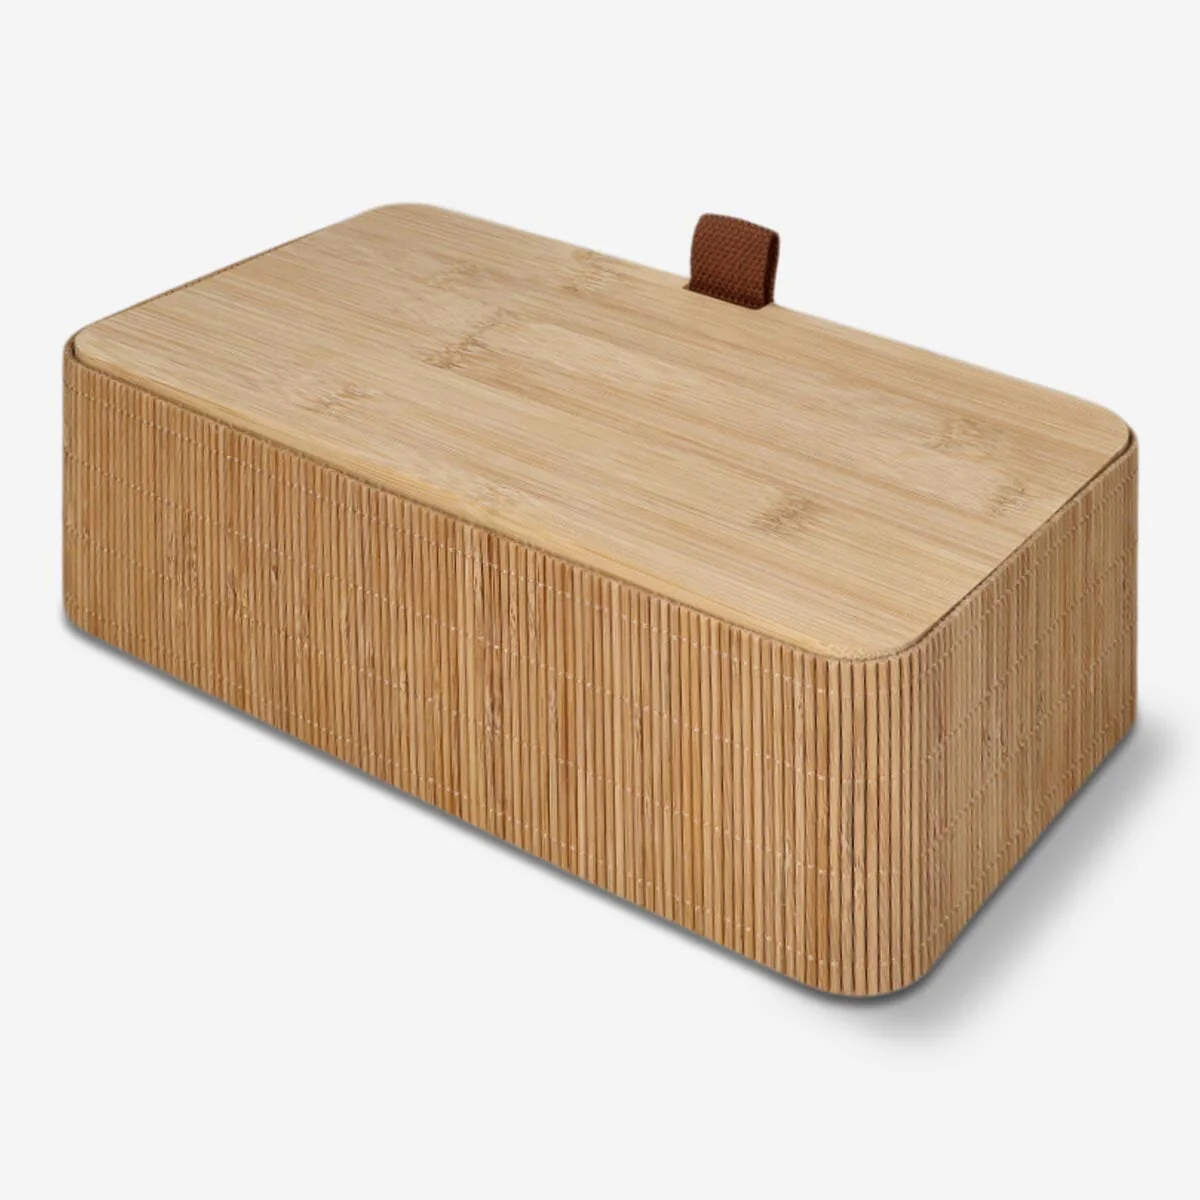 Caja de bambú con tapa.